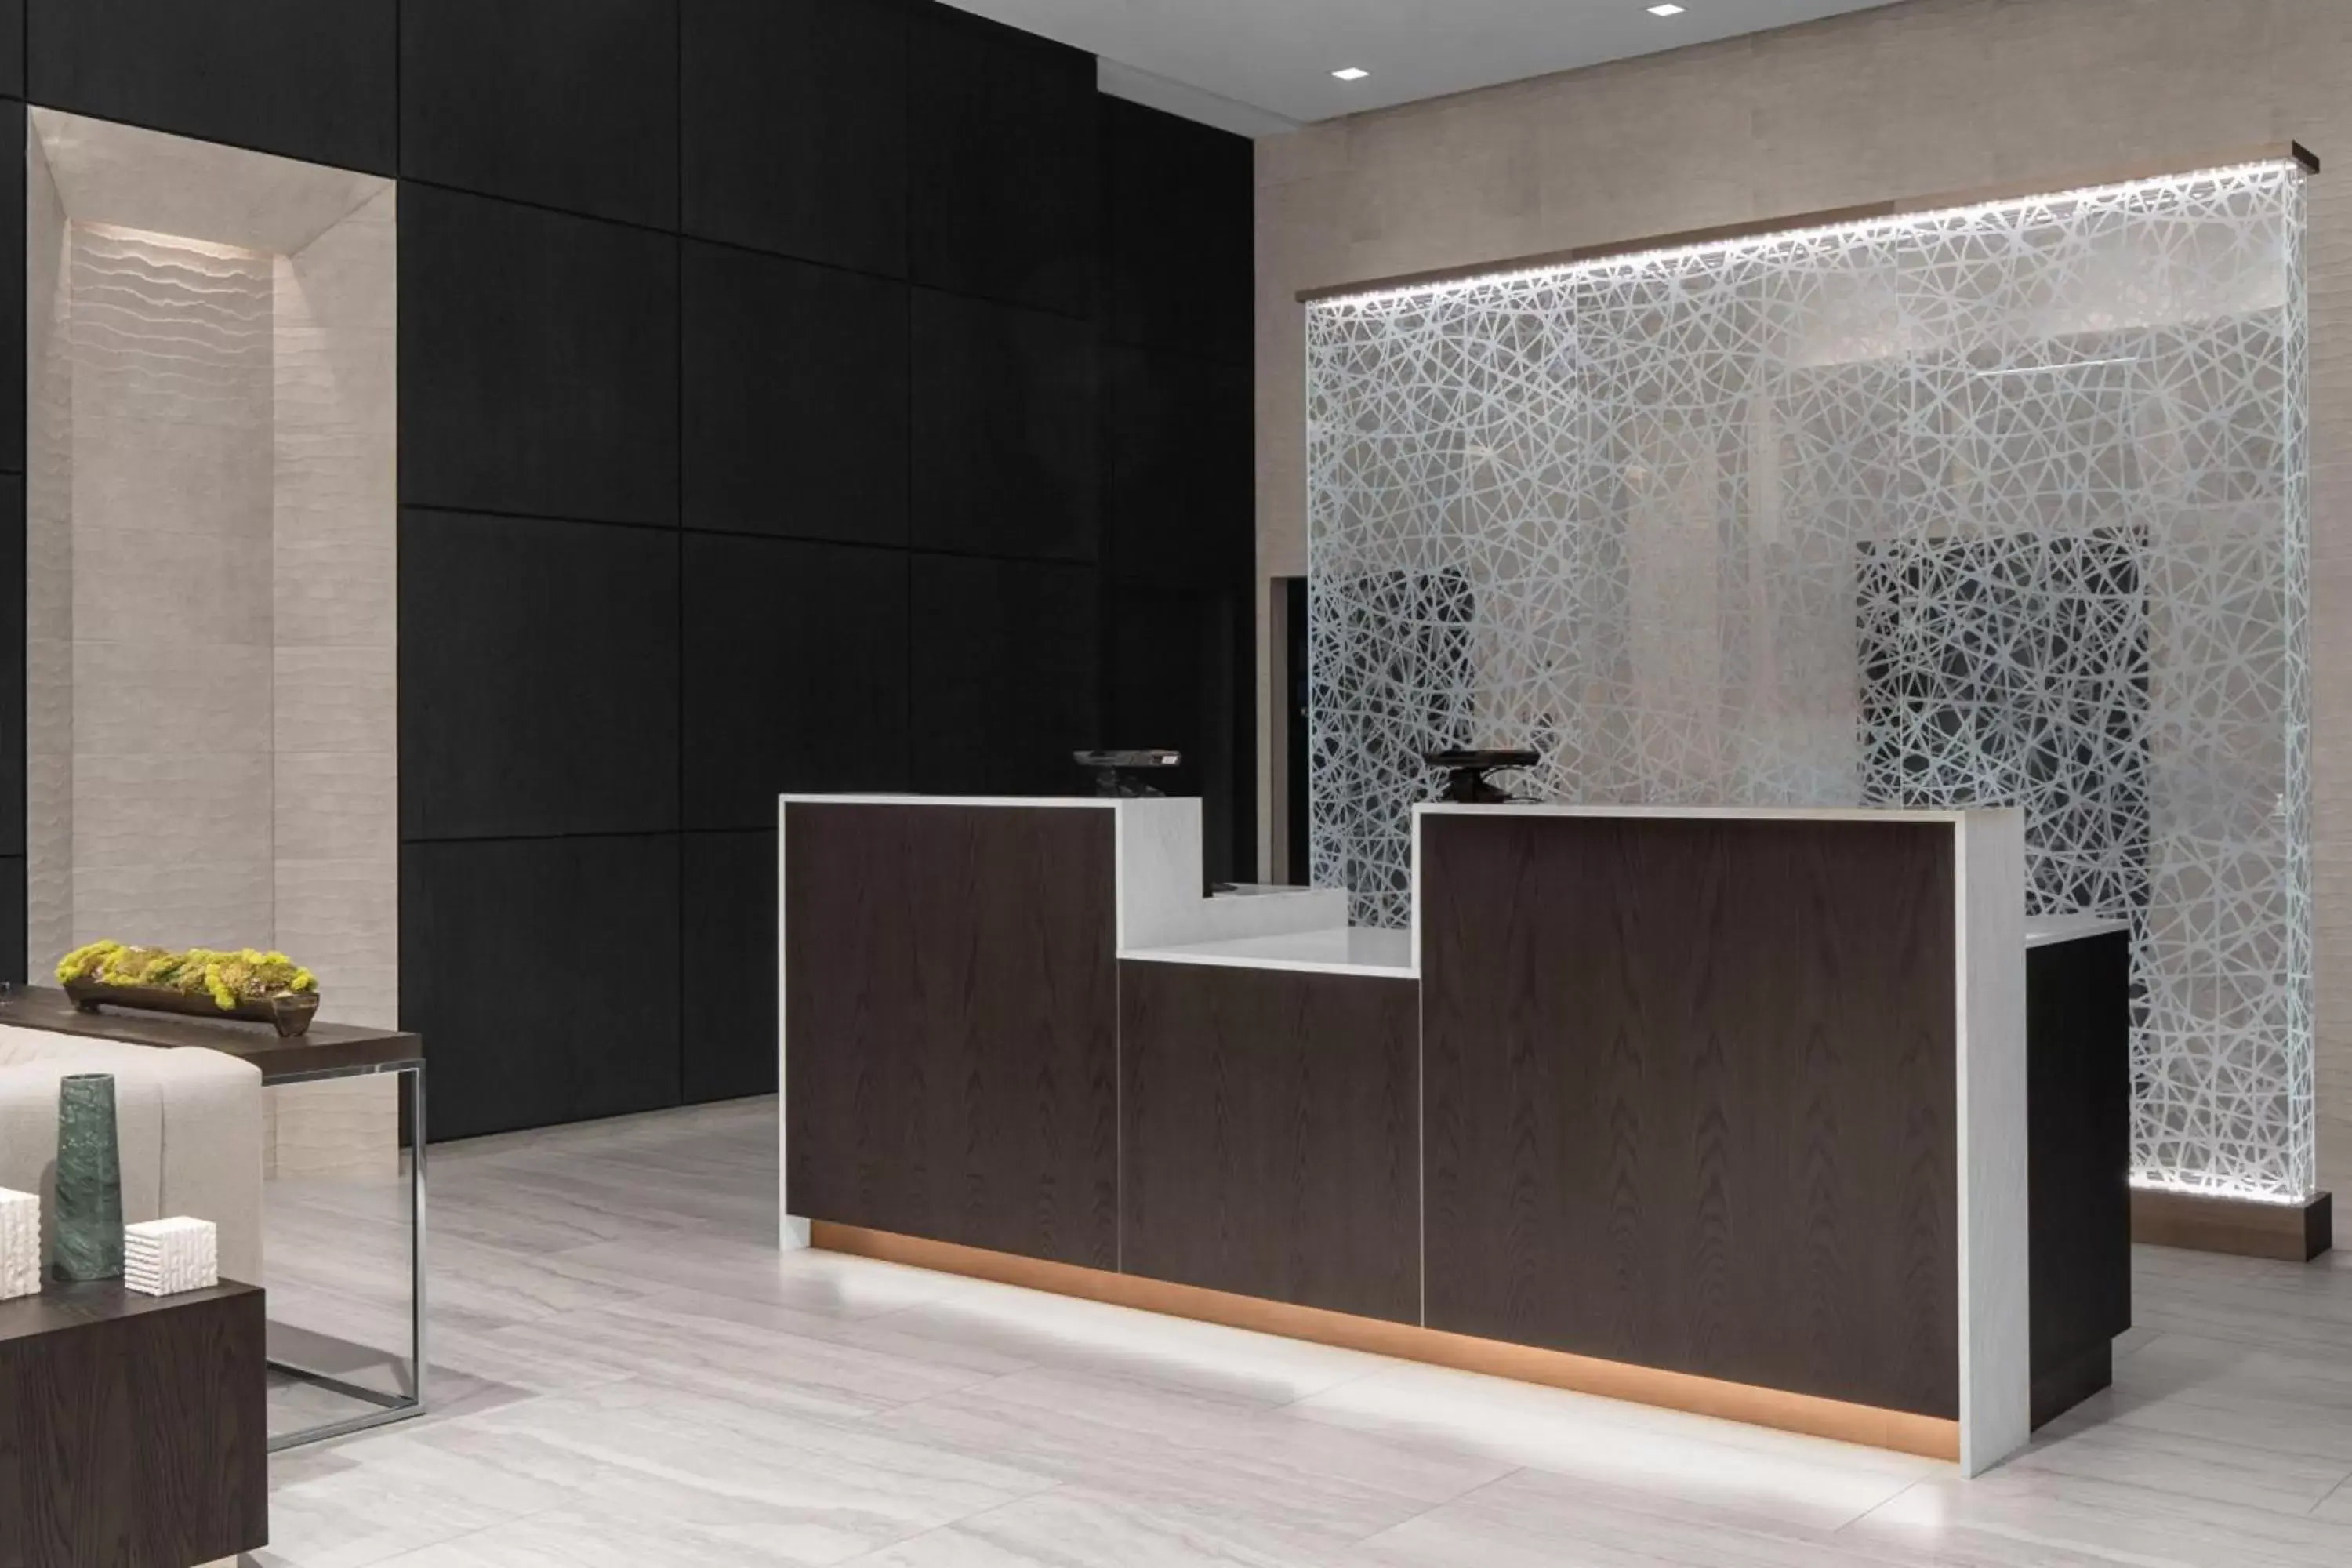 Lobby or reception, Lobby/Reception in AC Hotel by Marriott Miami Dadeland